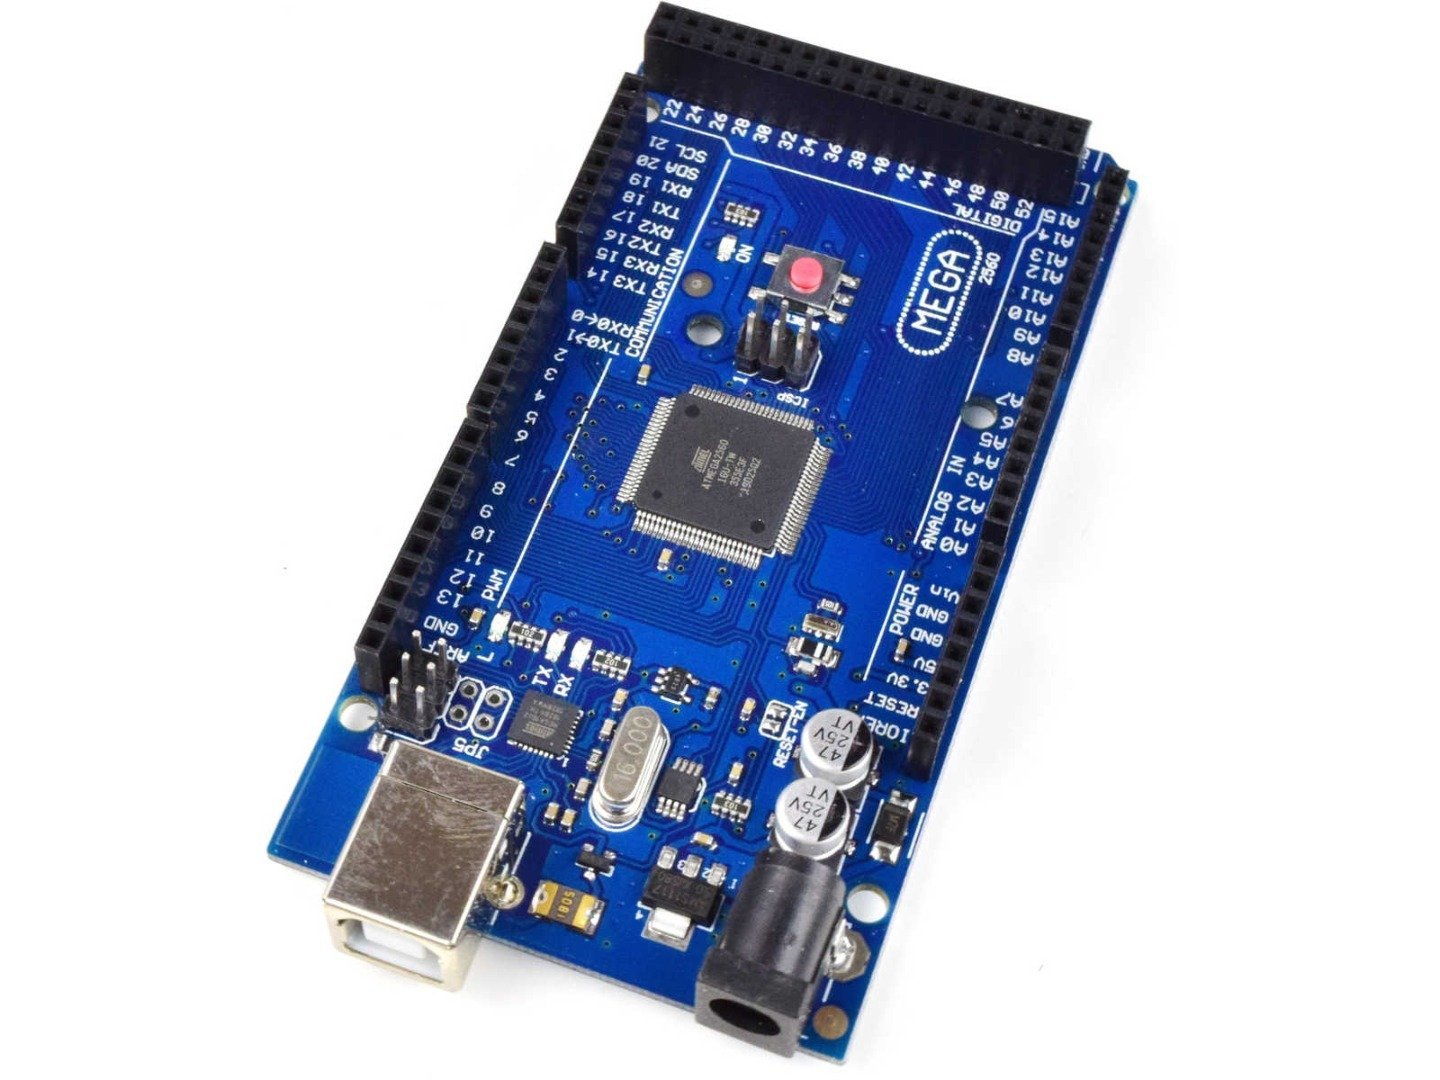 MEGA 2560 R3 module ATmega2560 + ATmega16u2 (100% compatible with Arduino) 5